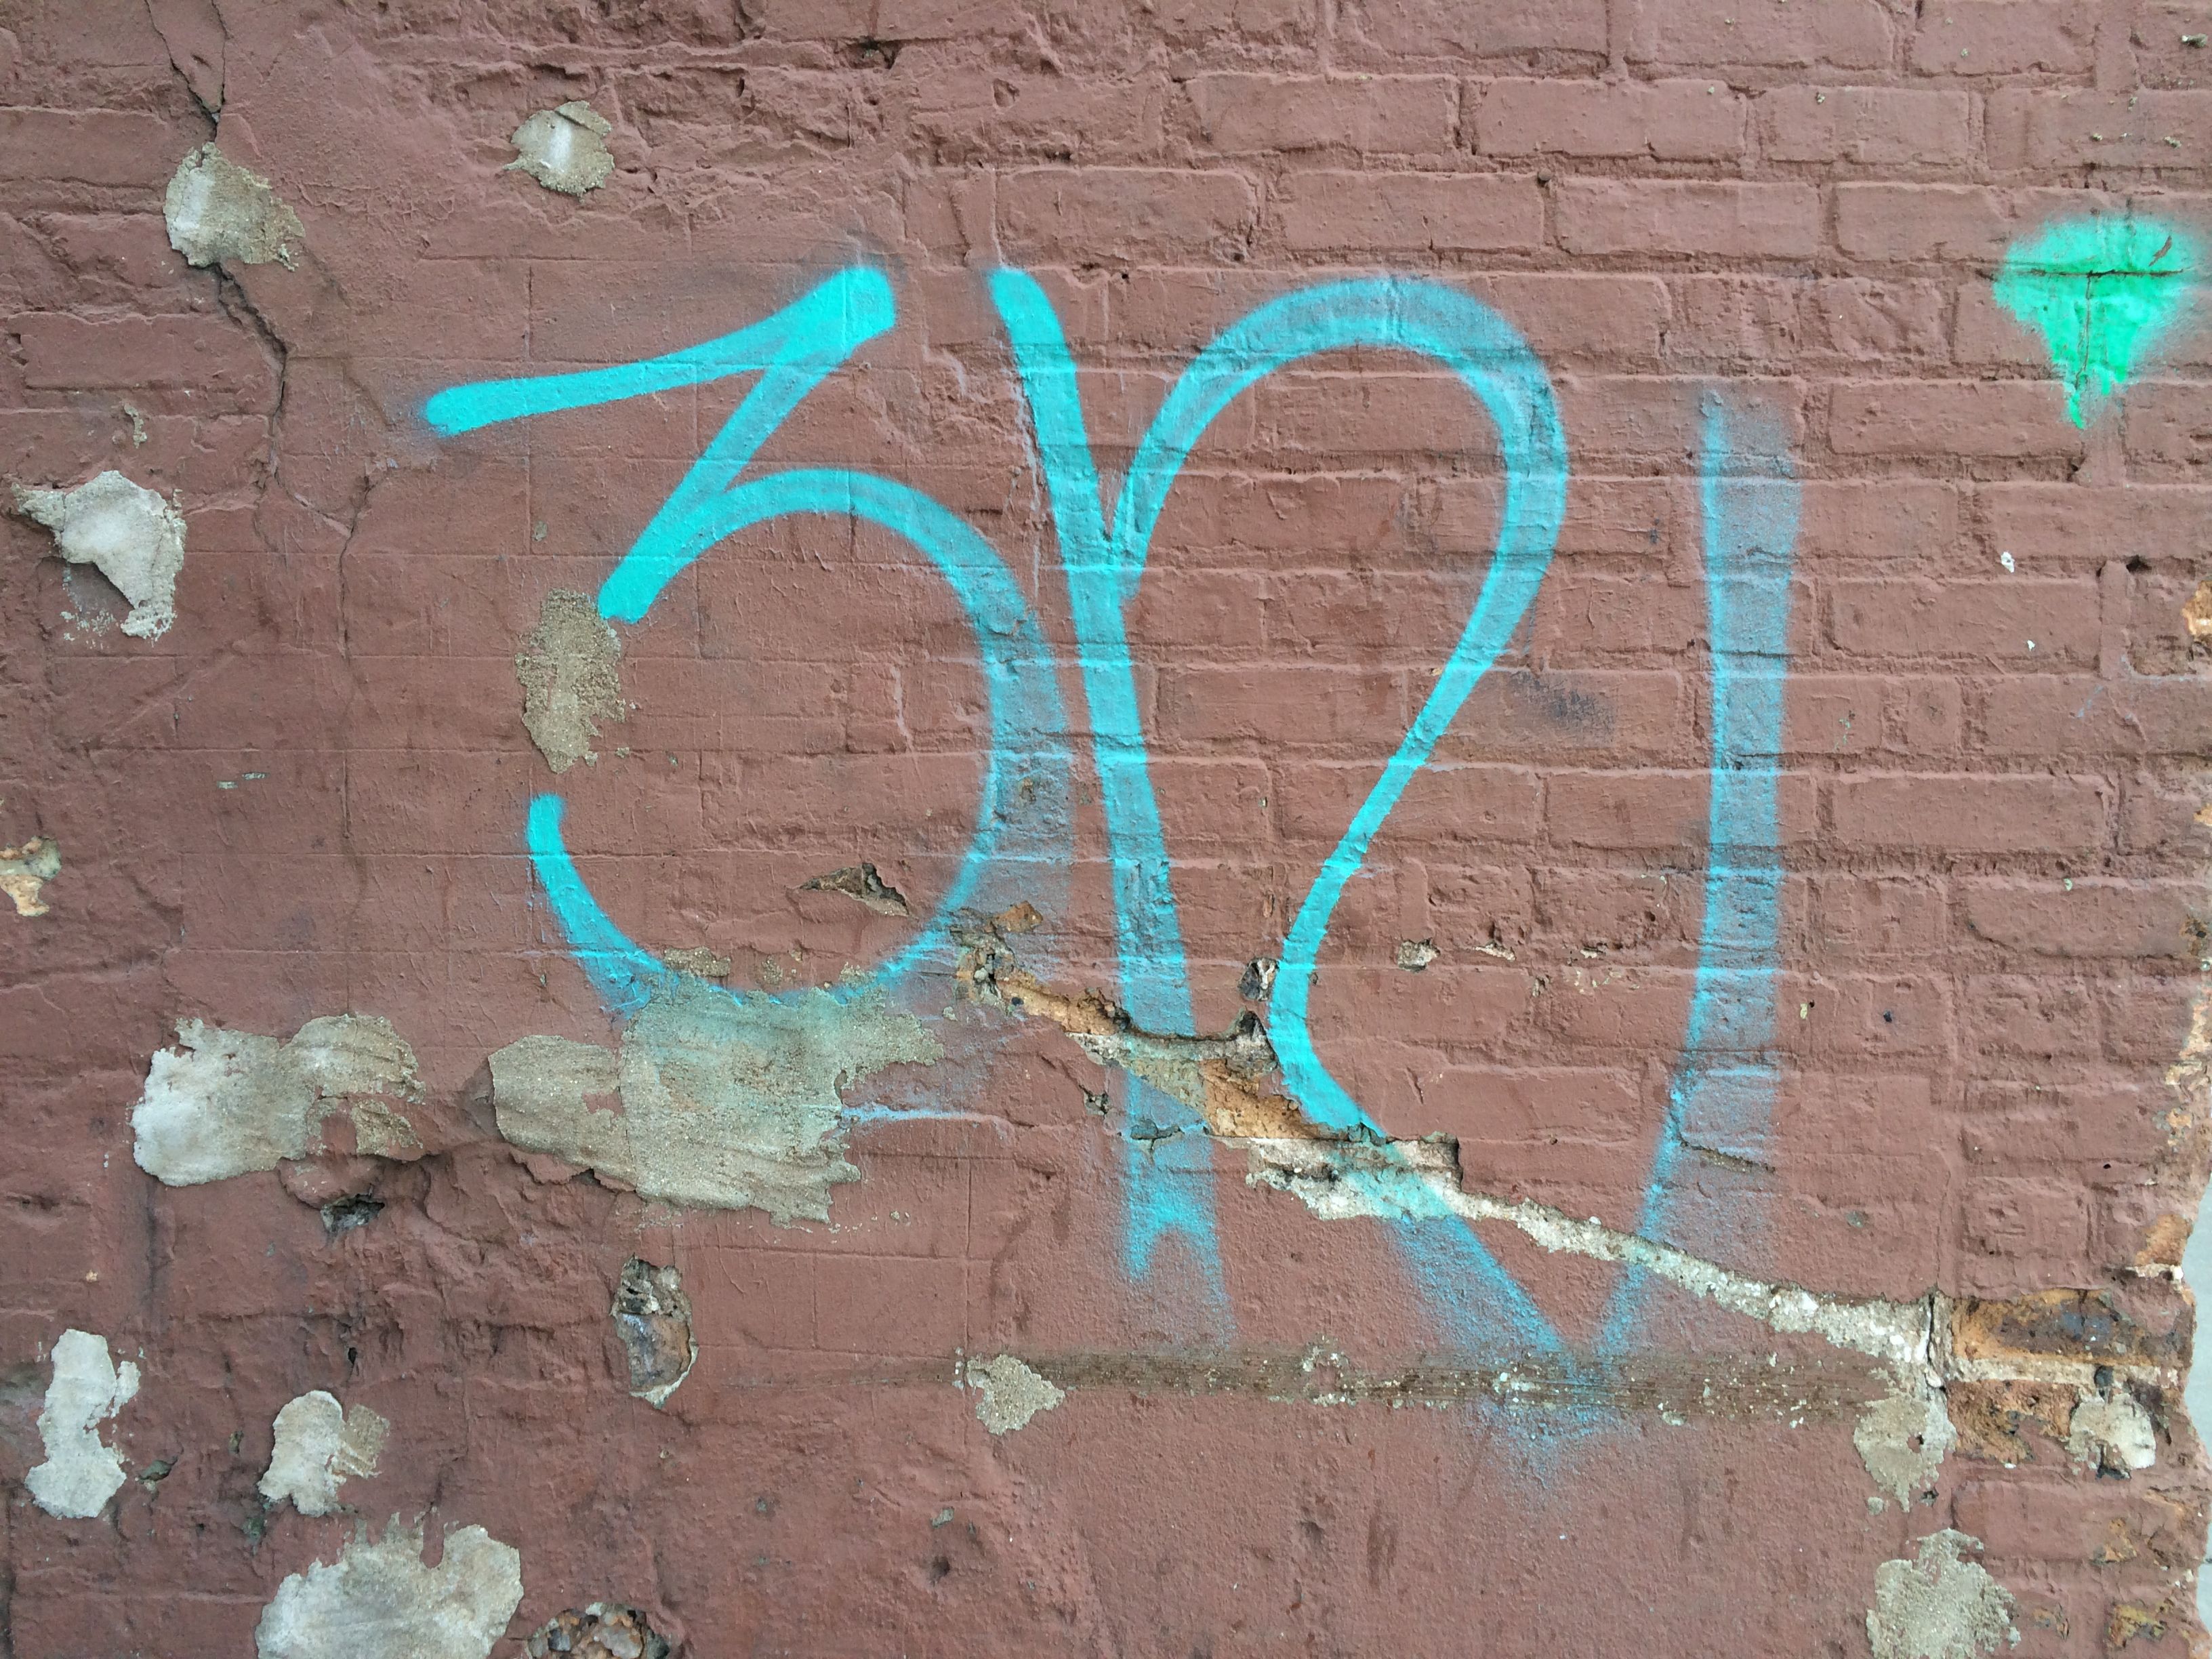 312 #graffiti #tag | Urban Scrawl | Pinterest | Graffiti tagging and ...